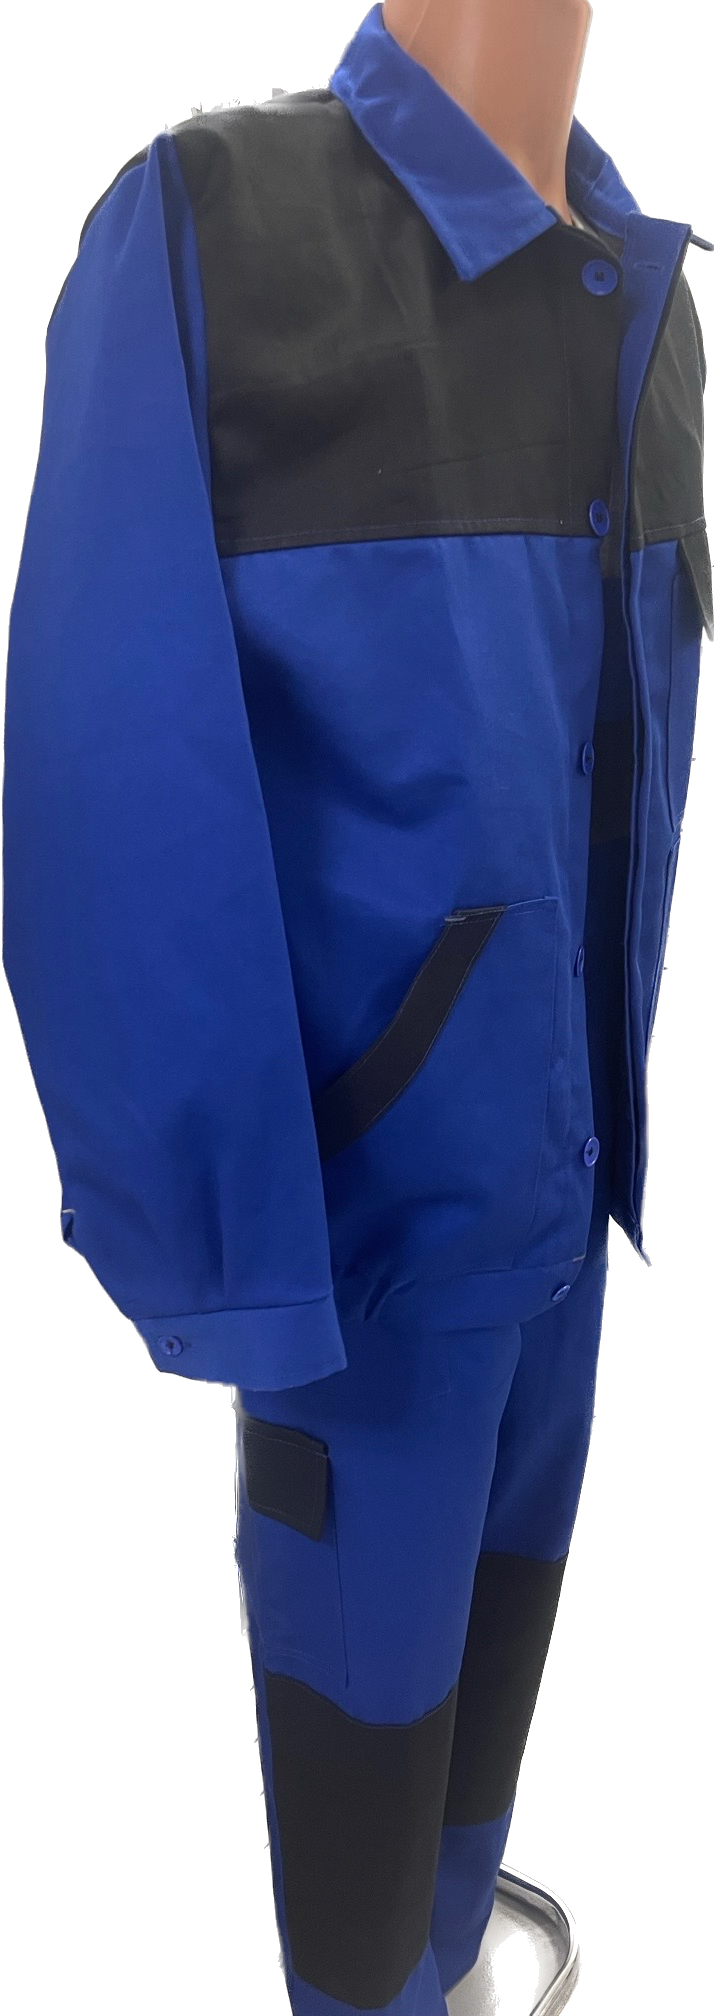 Pachet costum salopeta tex albastru/negru + CADOU tricou confort gri melange 46